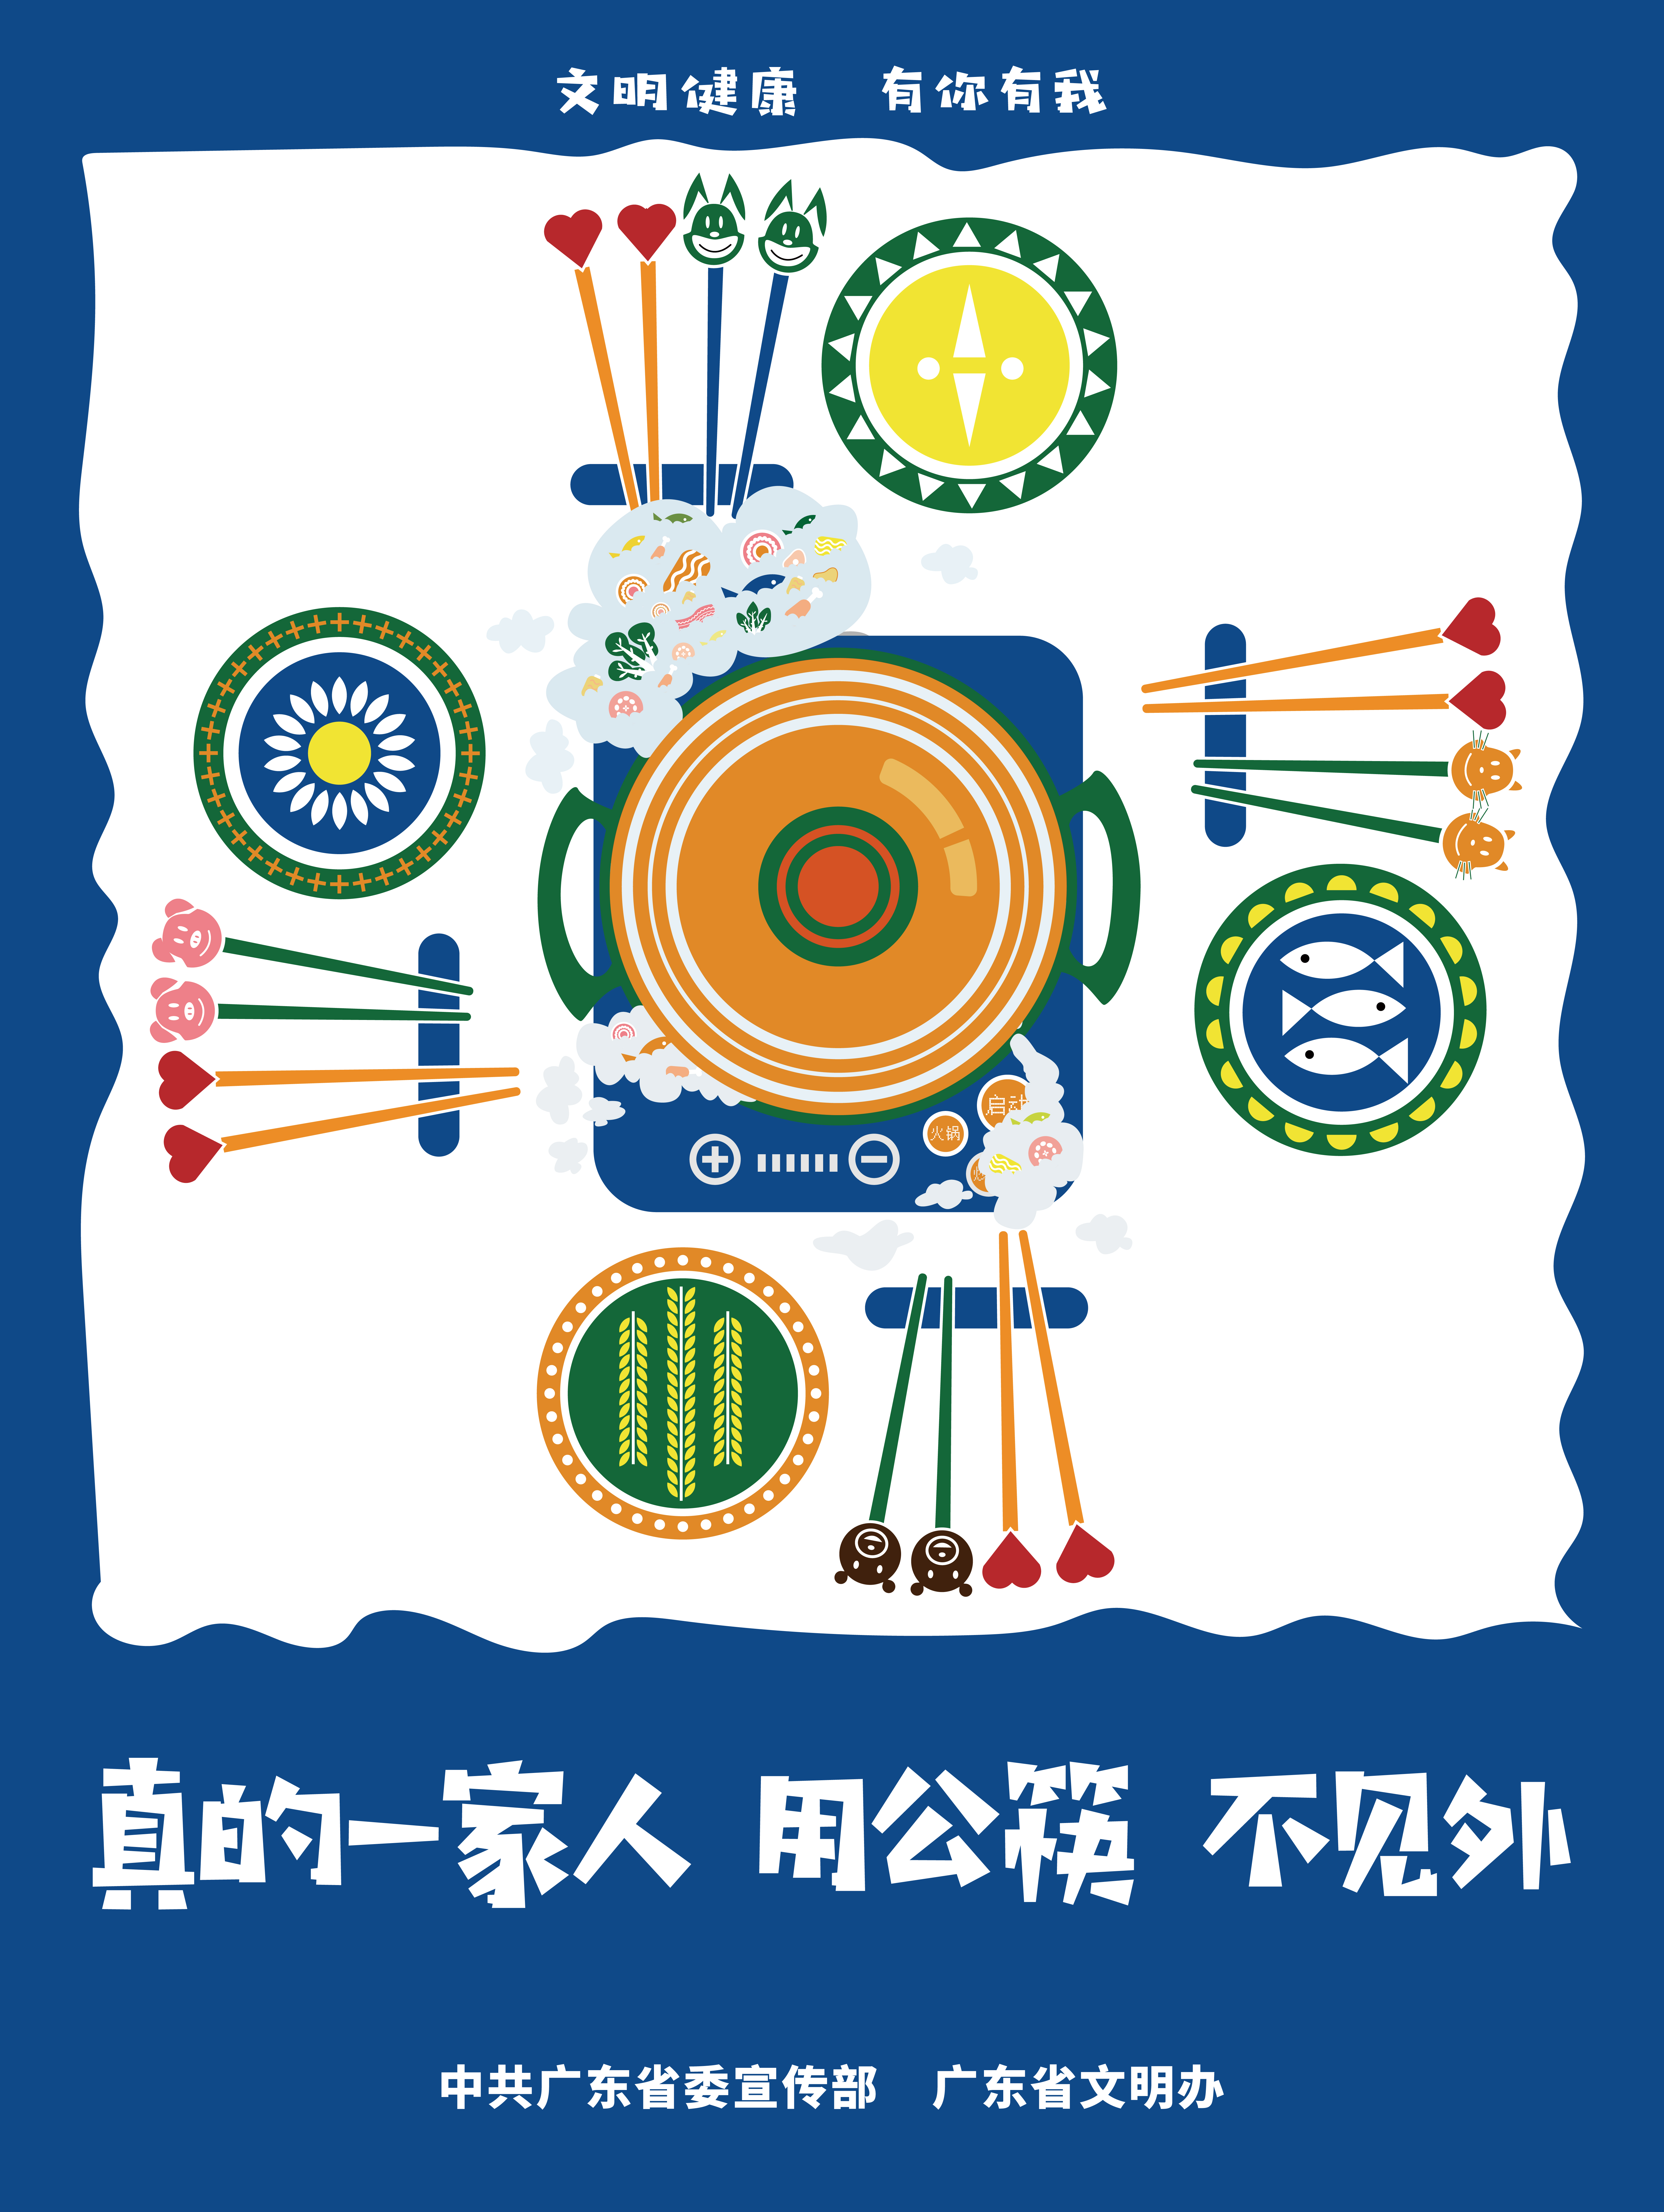 “使用公筷”公益海报_画板 1.jpg